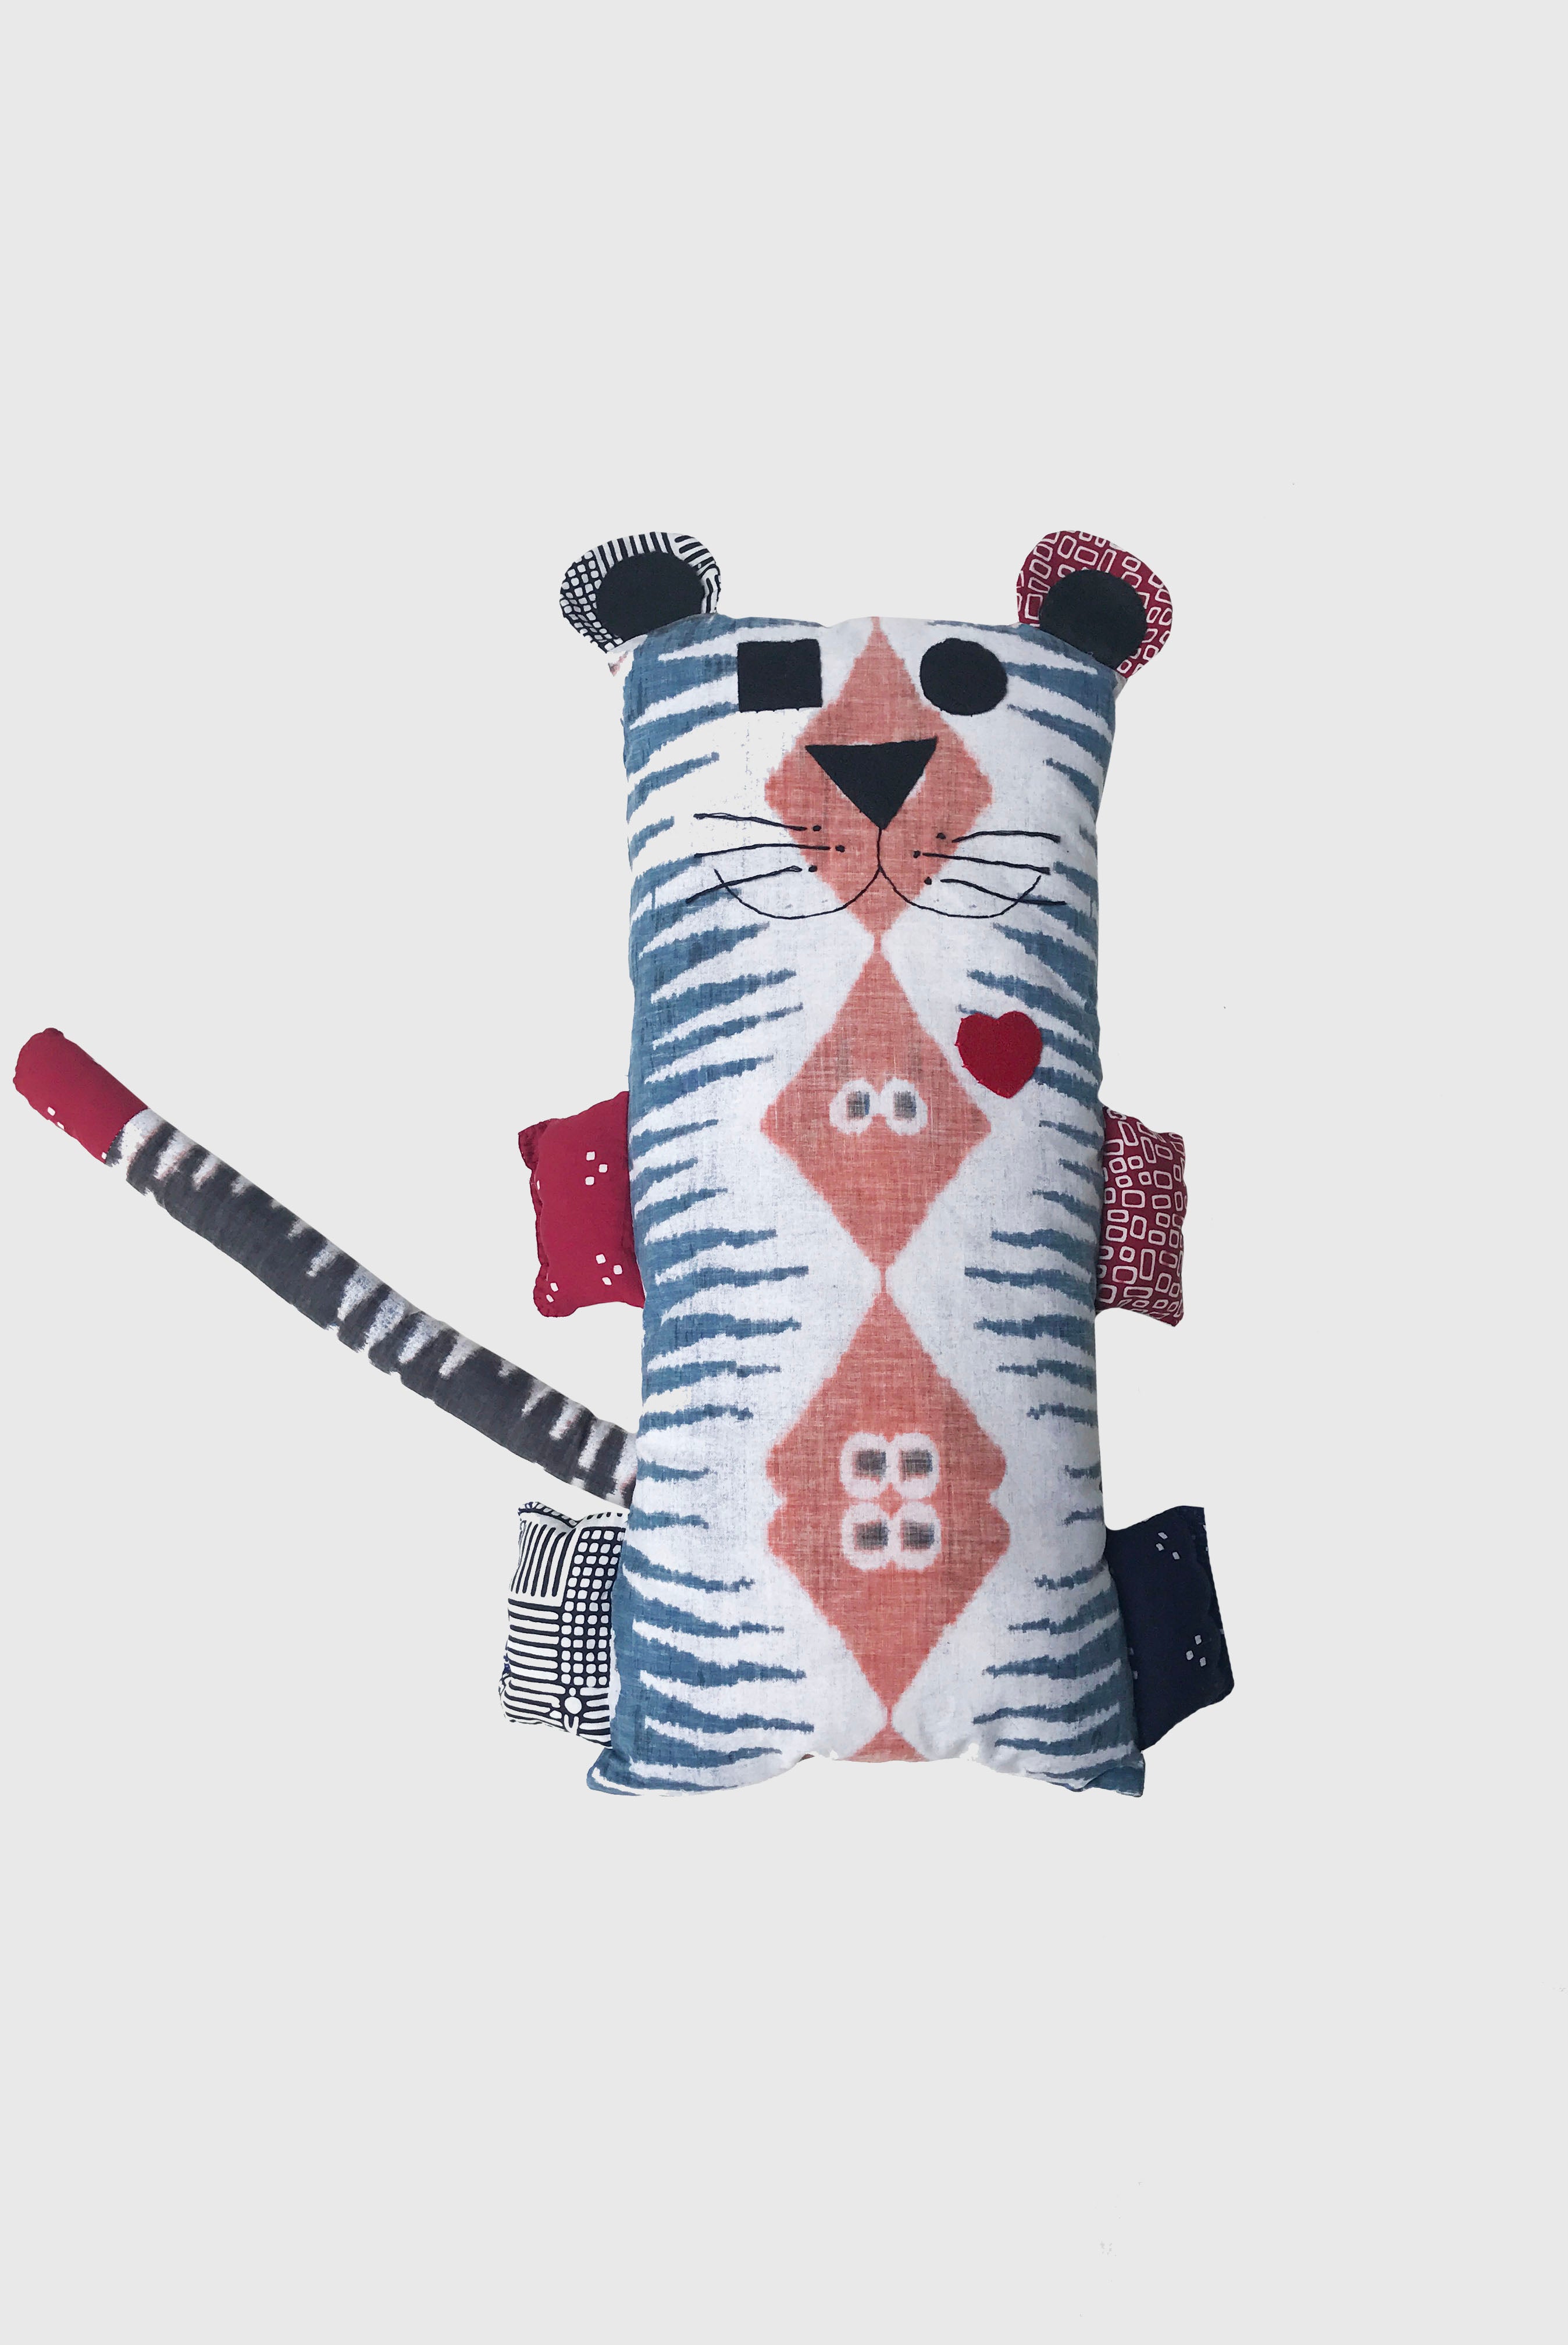 Harimau - Cuddly Toy